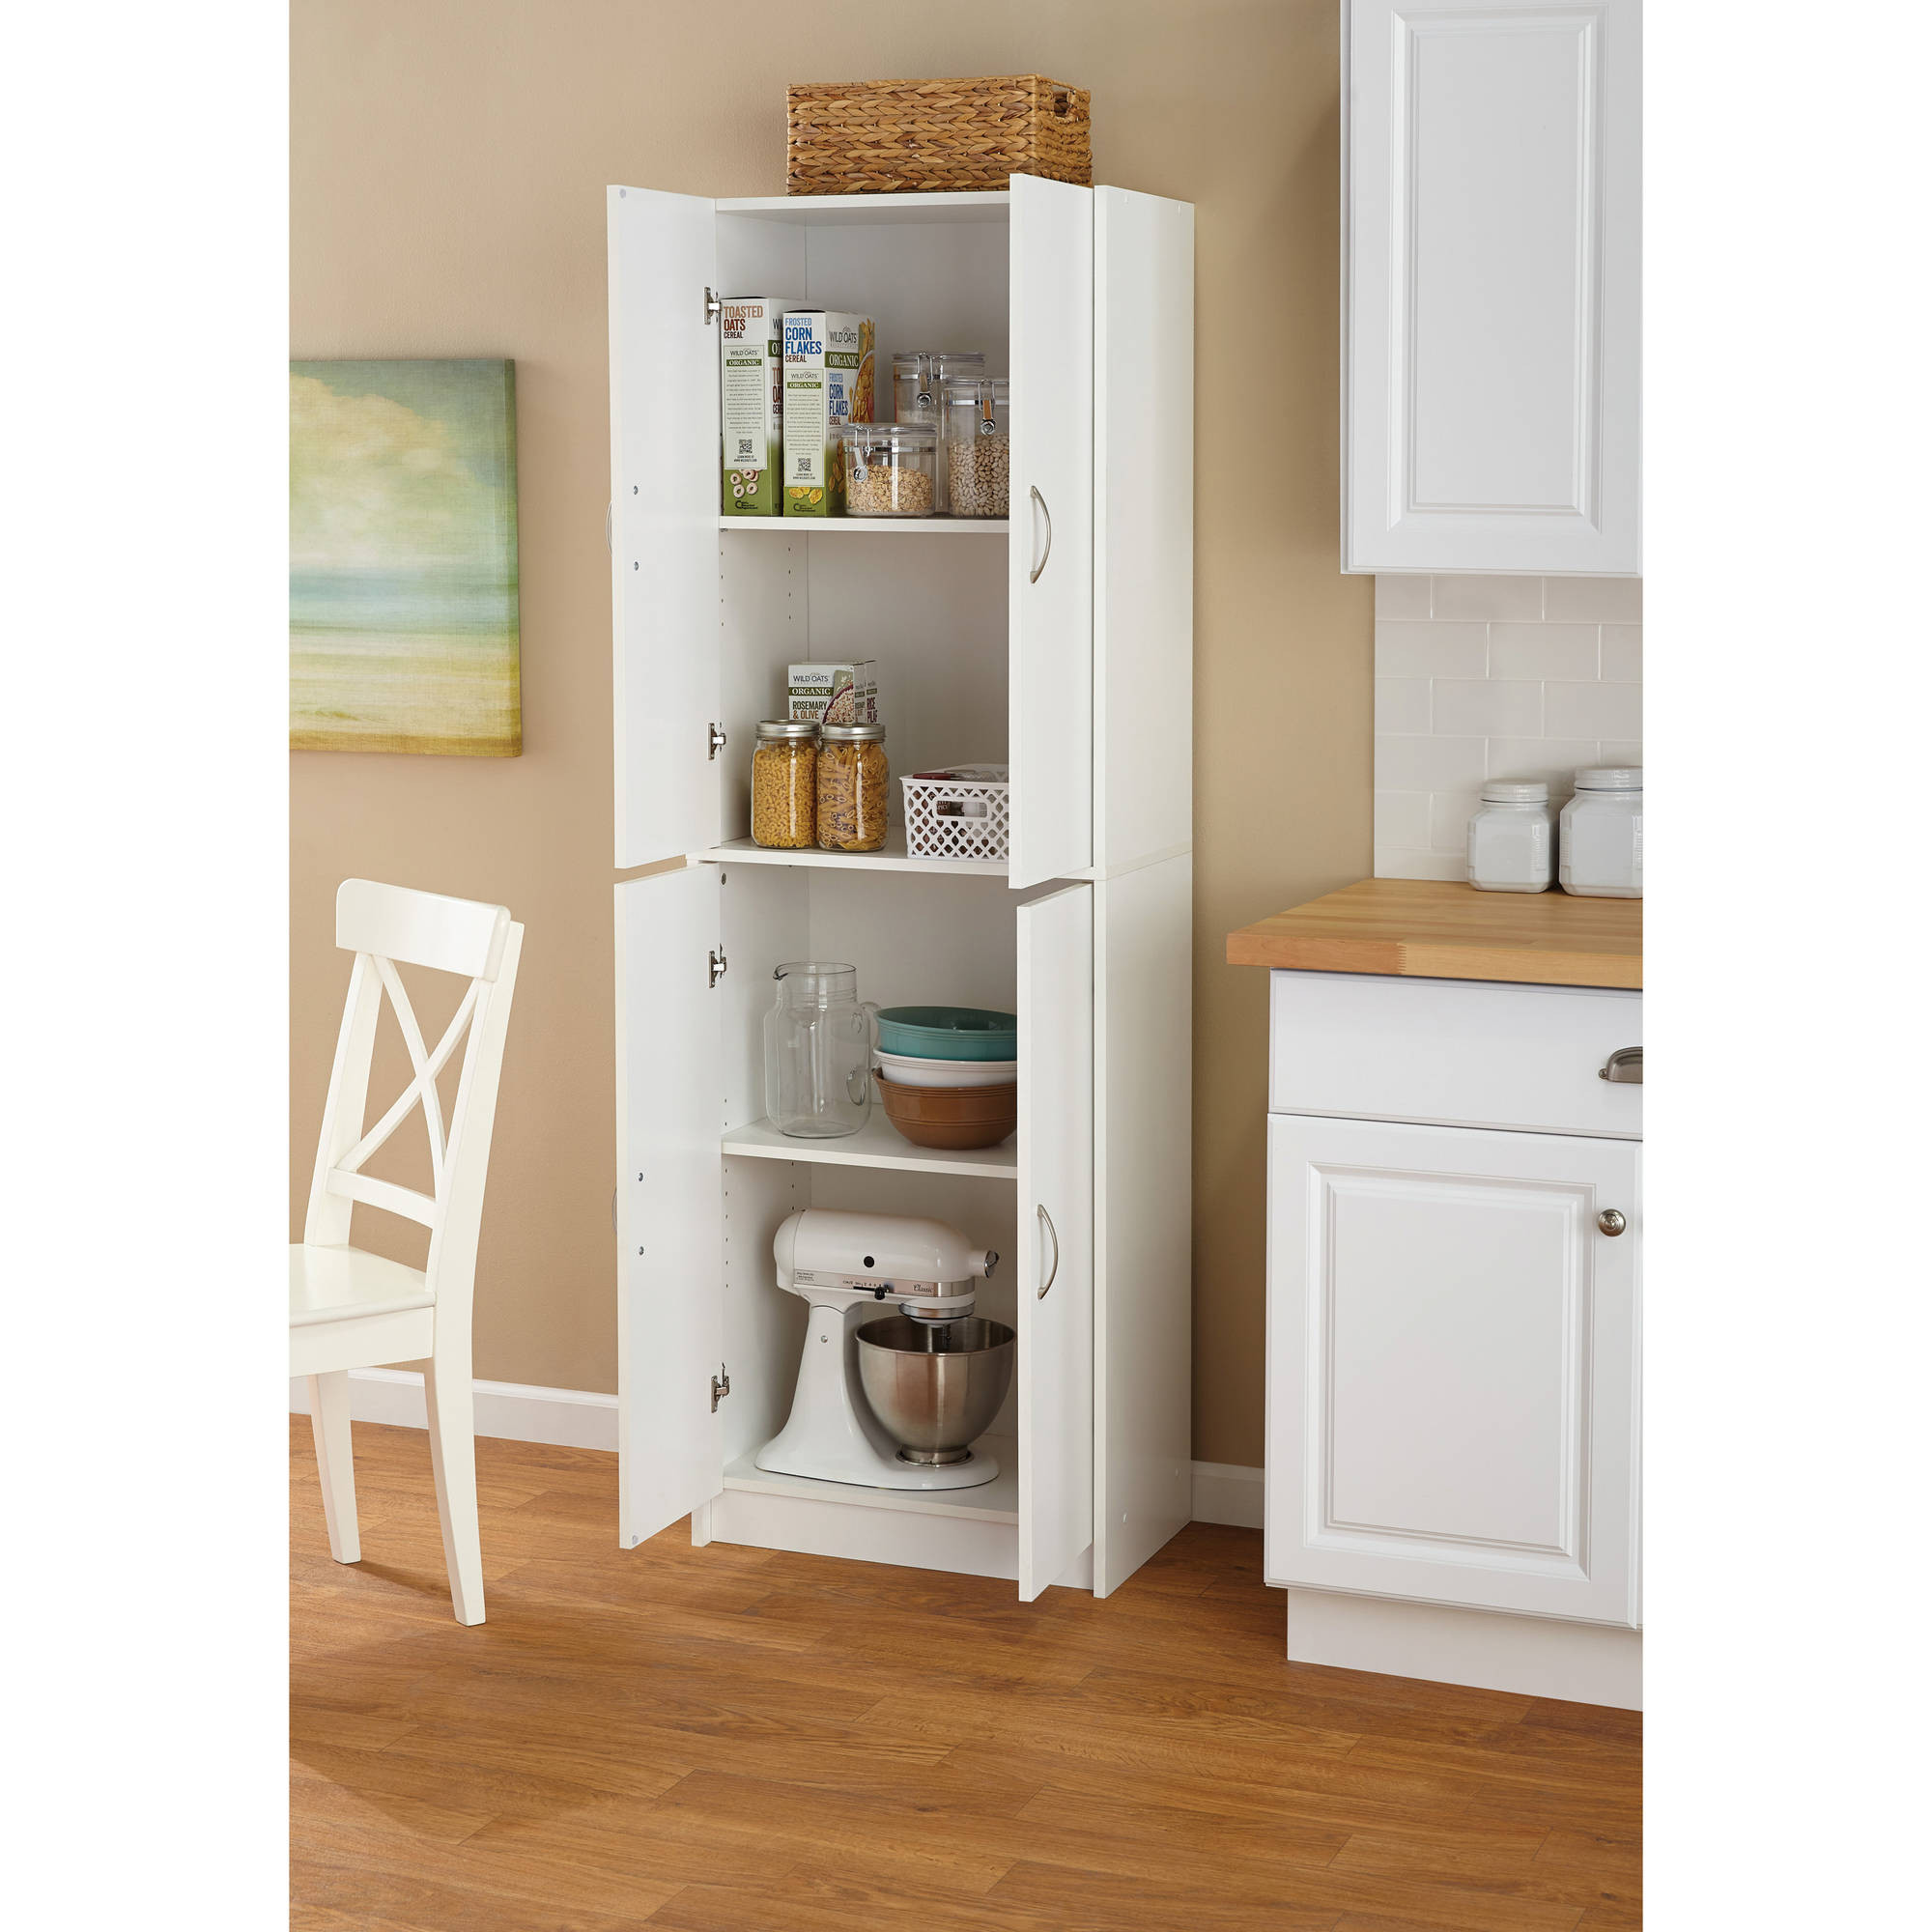 Best ideas about Storage Cabinet For Kitchen
. Save or Pin Tall Storage Cabinet Kitchen Cupboard Pantry Food Storage Now.